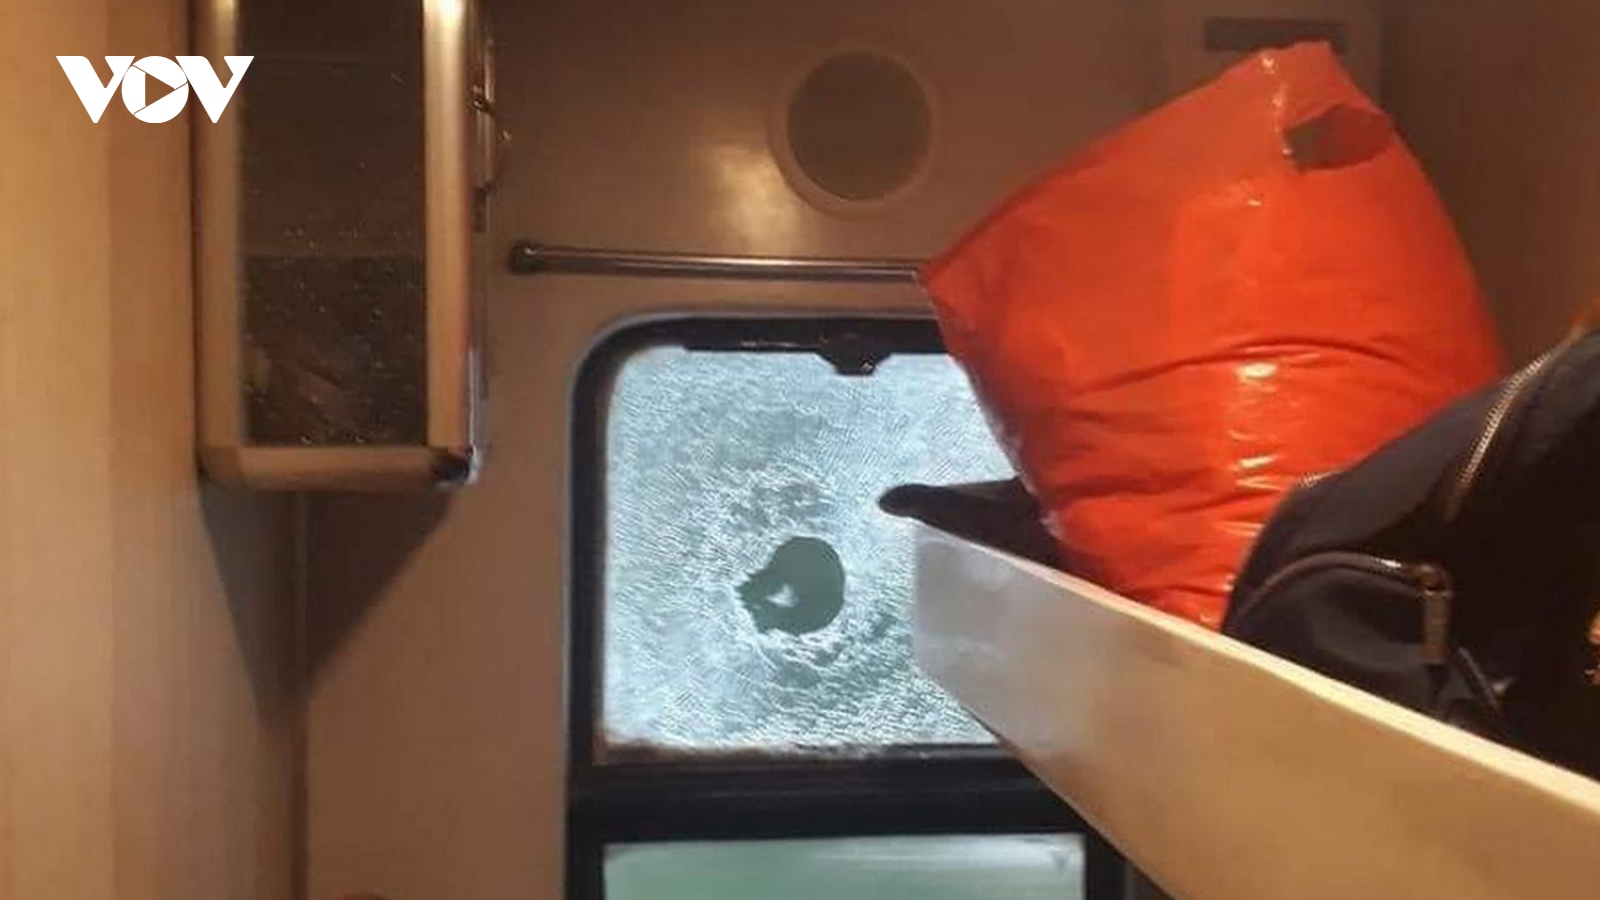 Tàu SE7 bị ném vỡ cửa kính khi đi qua Quảng Bình